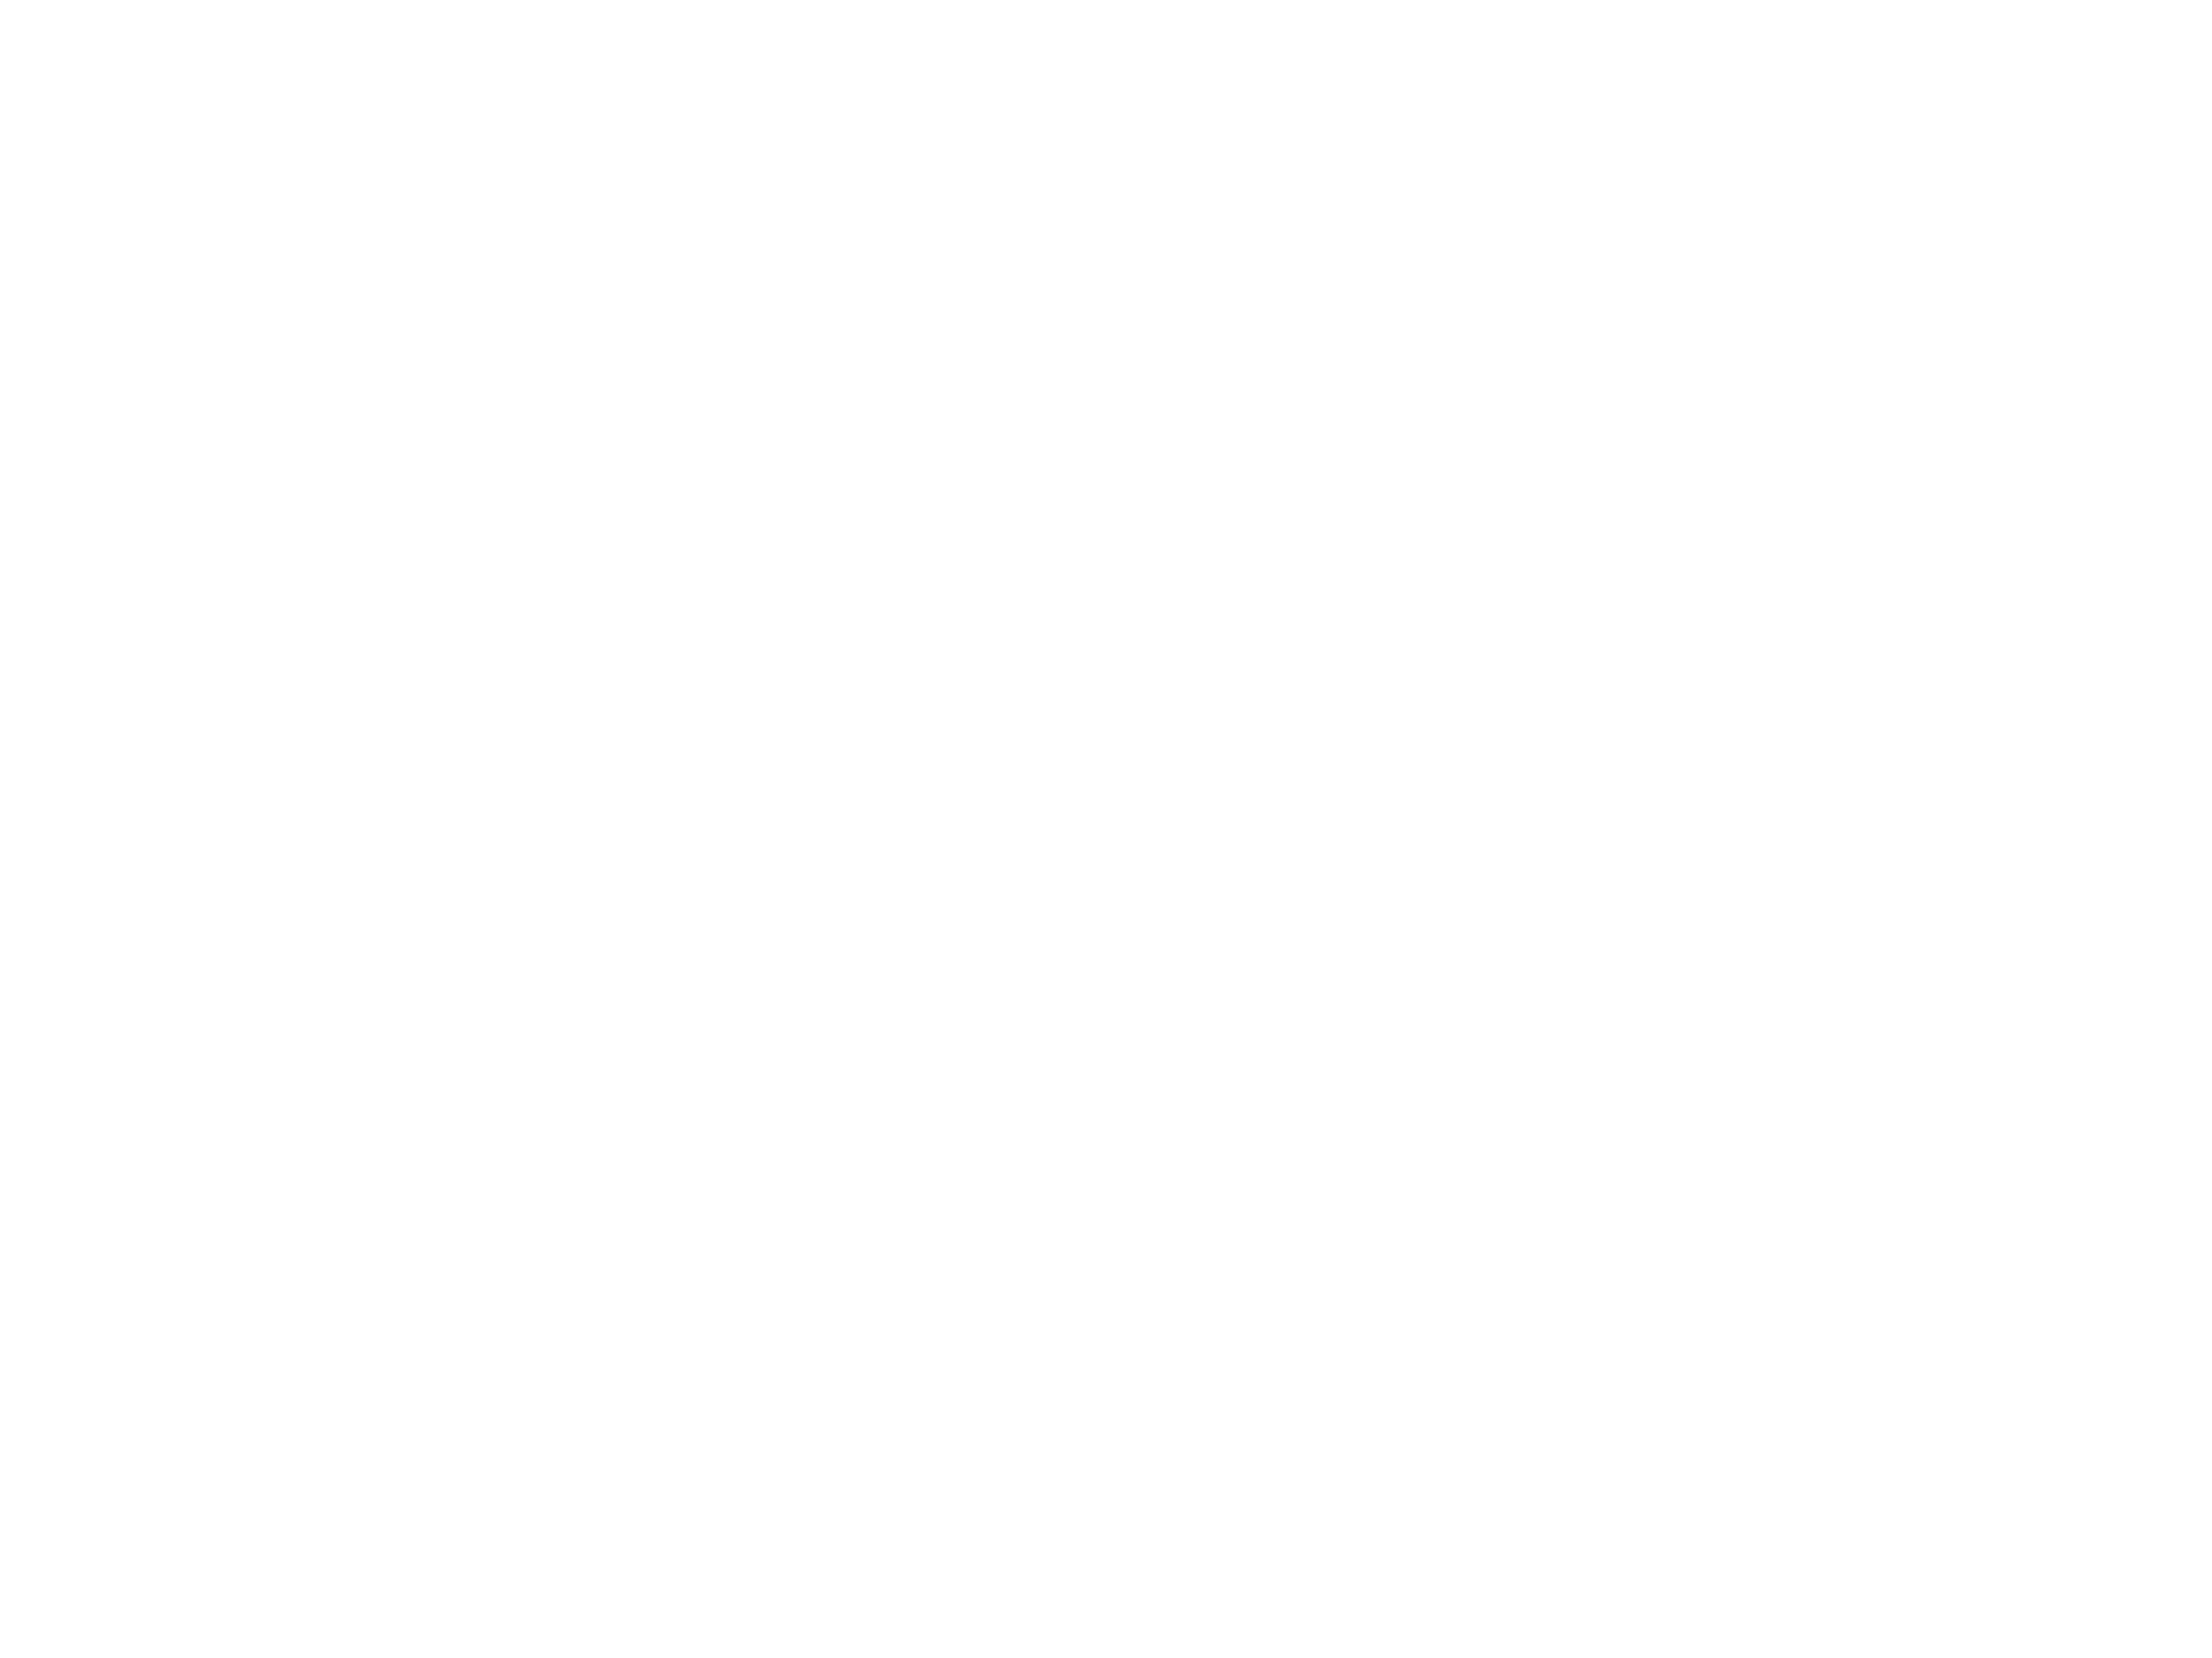 ACTUS SHINJUKU KITCHEN SHOWROOM RE-NEW